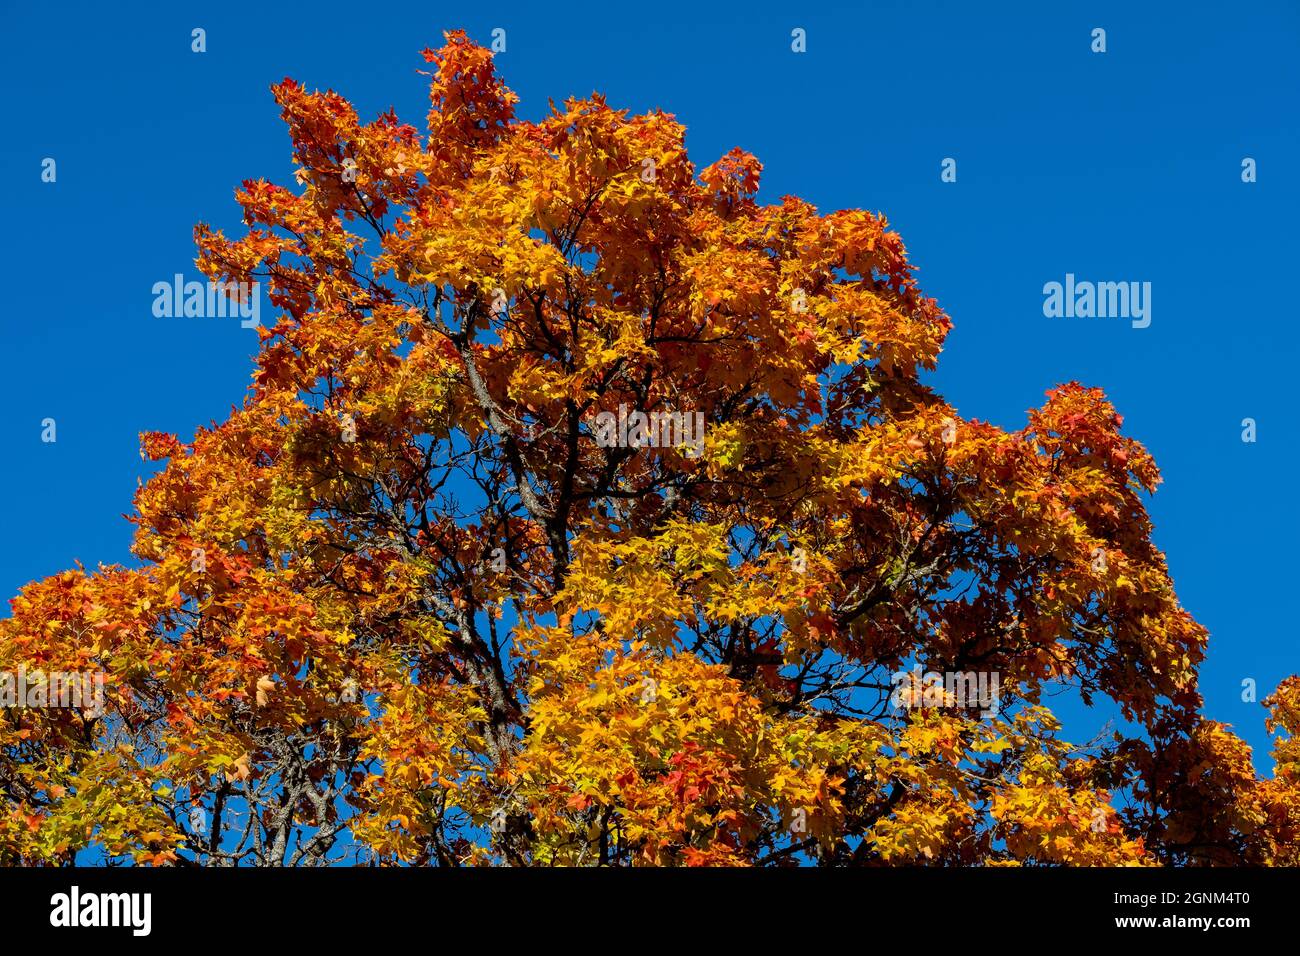 Helsinki / Finnland - 26. SEPTEMBER 2021: Nahaufnahme von Baumblättern in Herbstfarben vor hellblauem Himmel Stockfoto